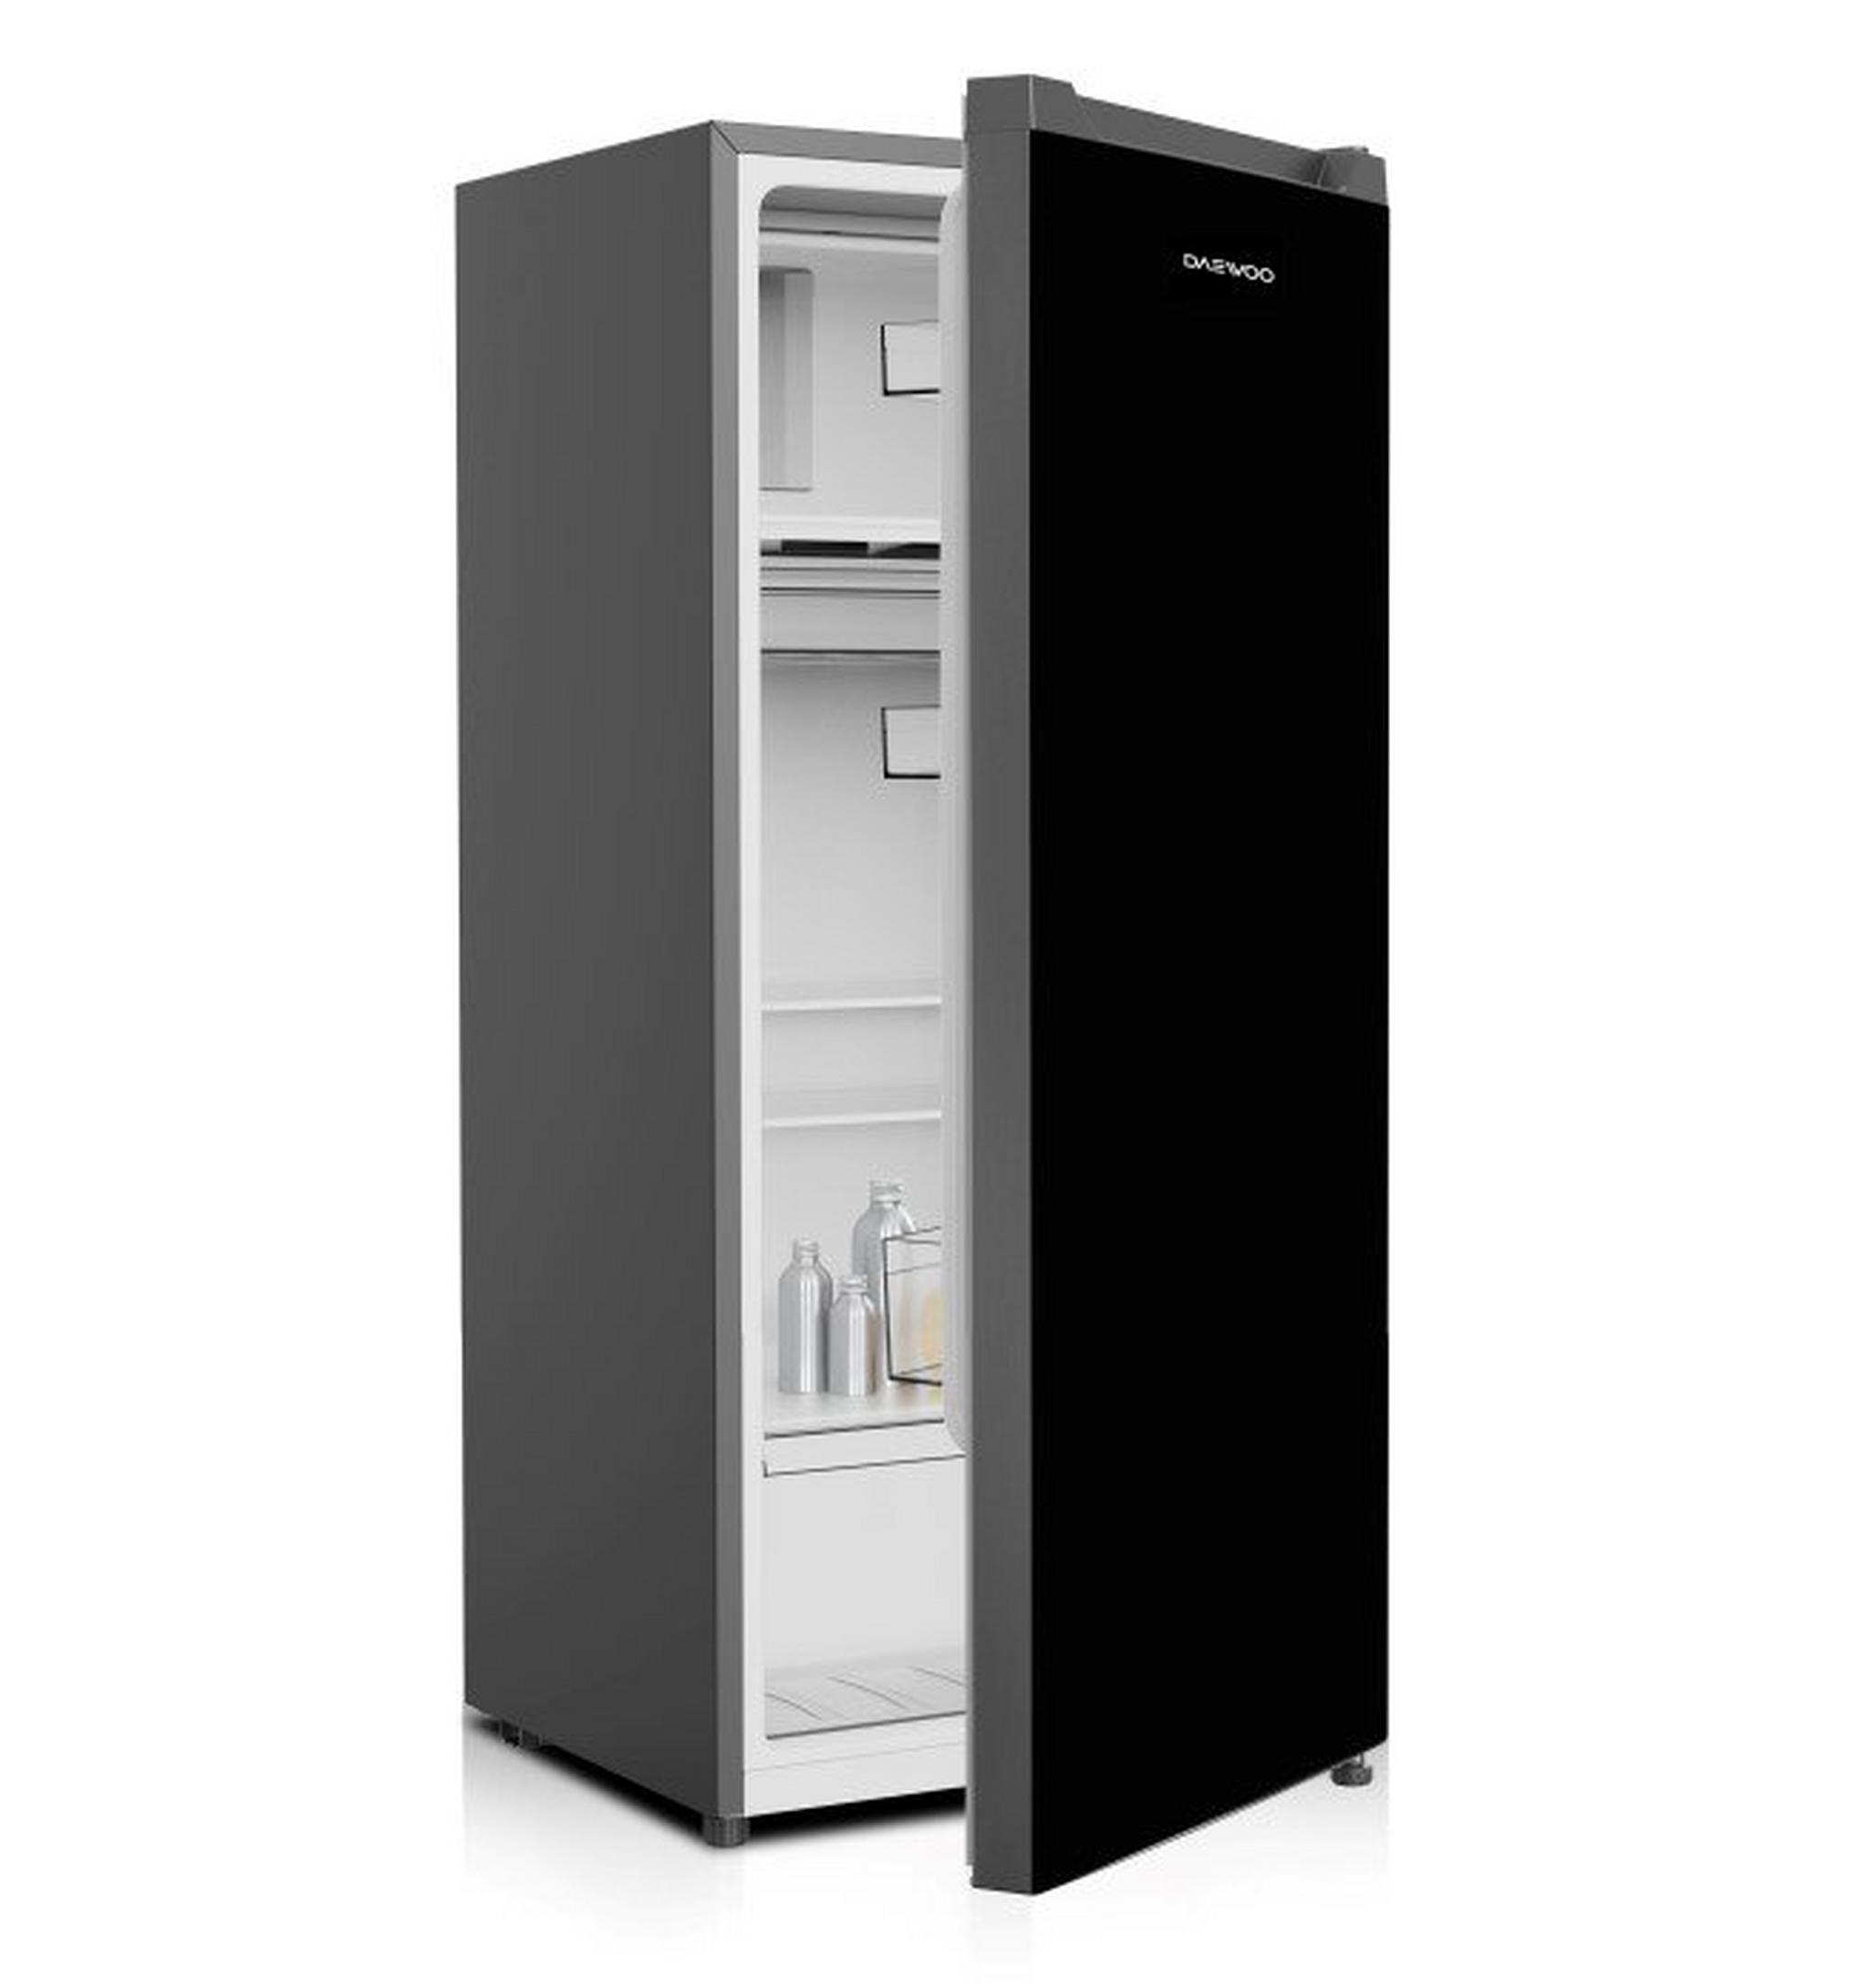 DAEWOO Single Door Refrigerator, 6 CFT, 175 Liters, DROG-175-DSC82 - Silver